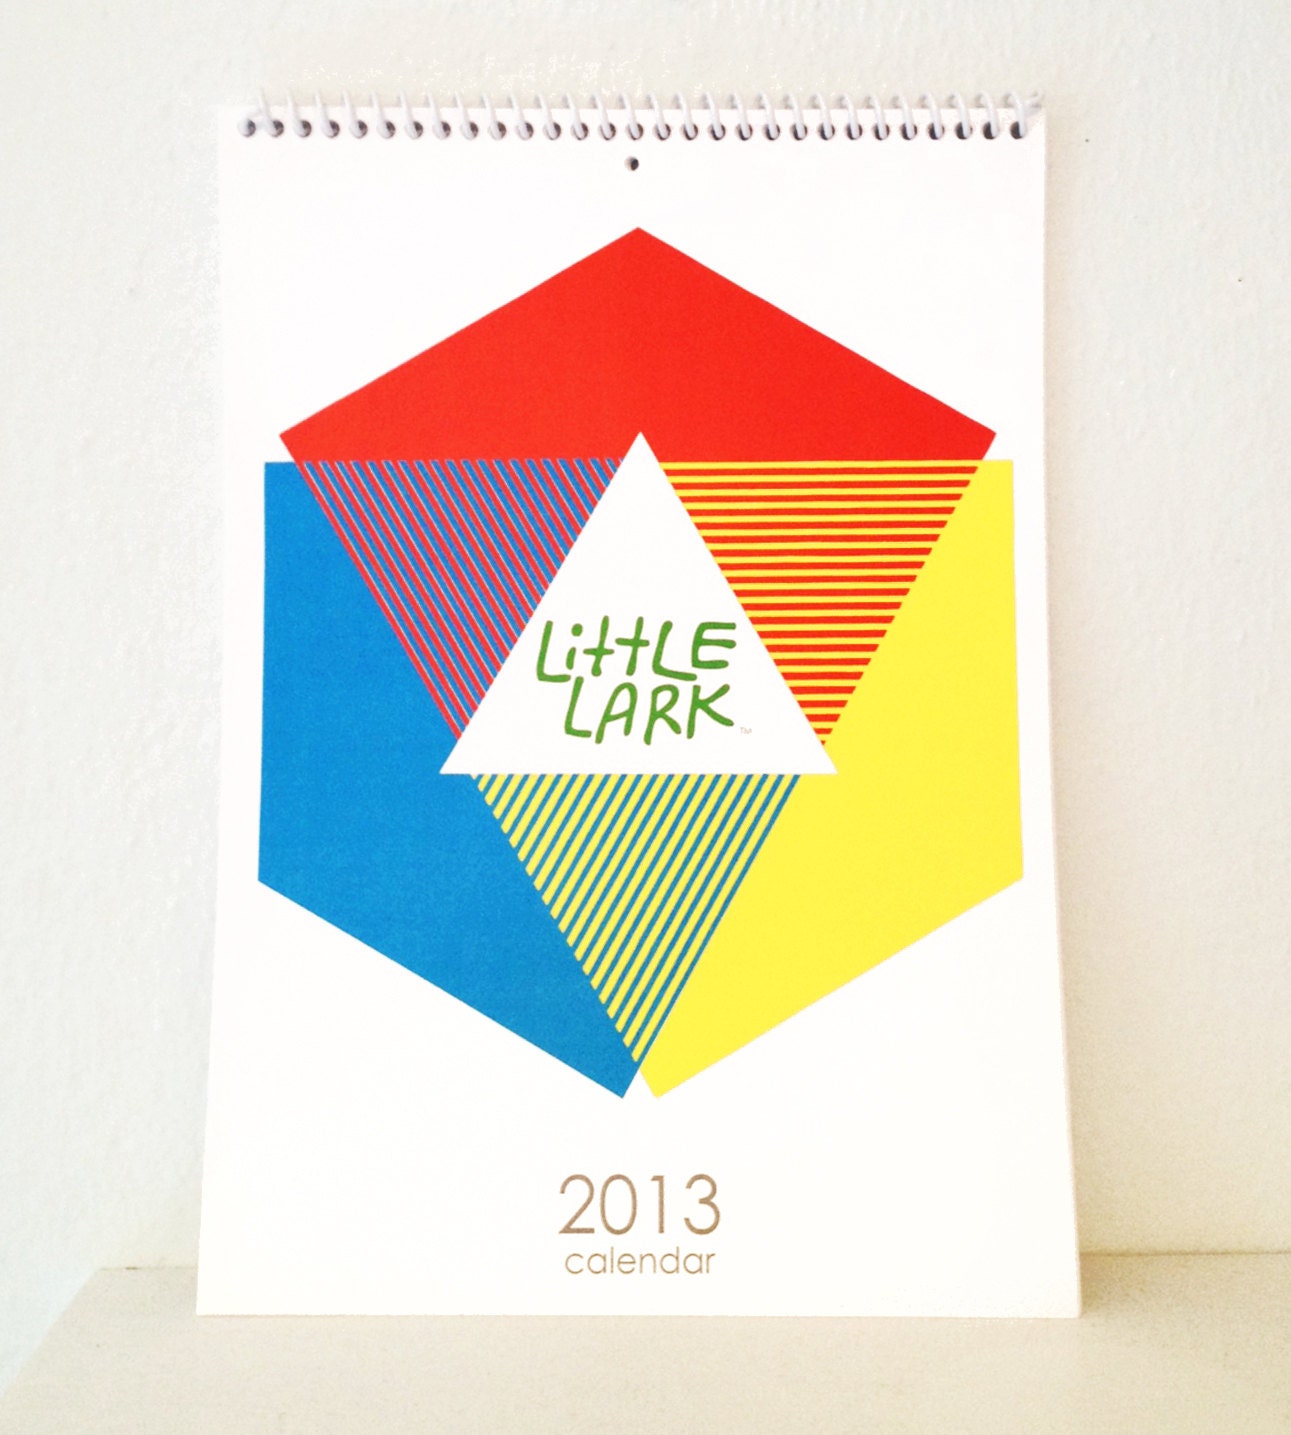 Little Lark 2013 wall desk Calendar, digitally printed, full color, original designs, perfect holiday gift for nature lover. - alittlelark